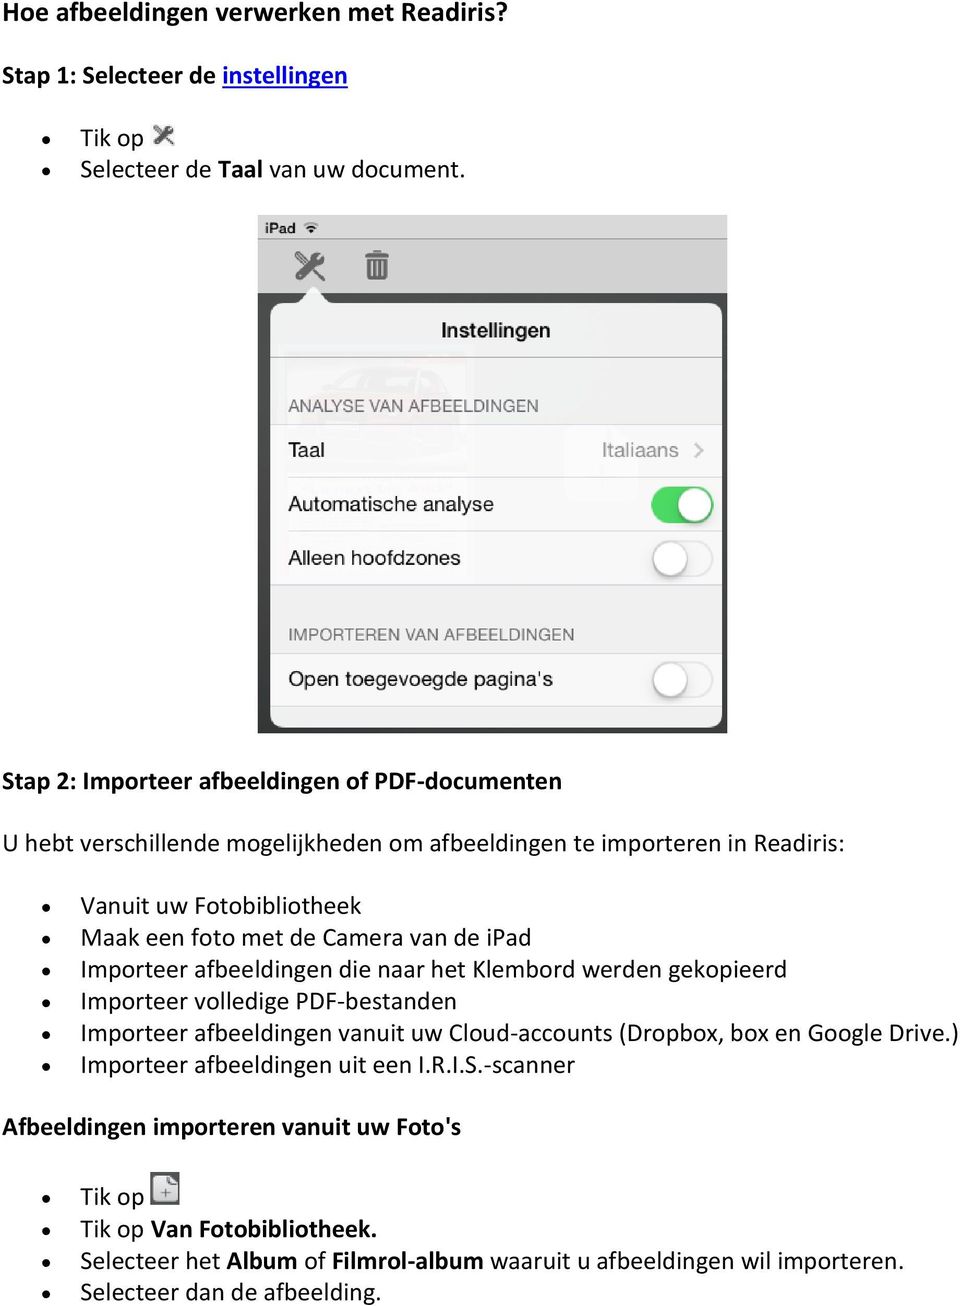 Camera van de ipad Importeer afbeeldingen die naar het Klembord werden gekopieerd Importeer volledige PDF-bestanden Importeer afbeeldingen vanuit uw Cloud-accounts (Dropbox, box